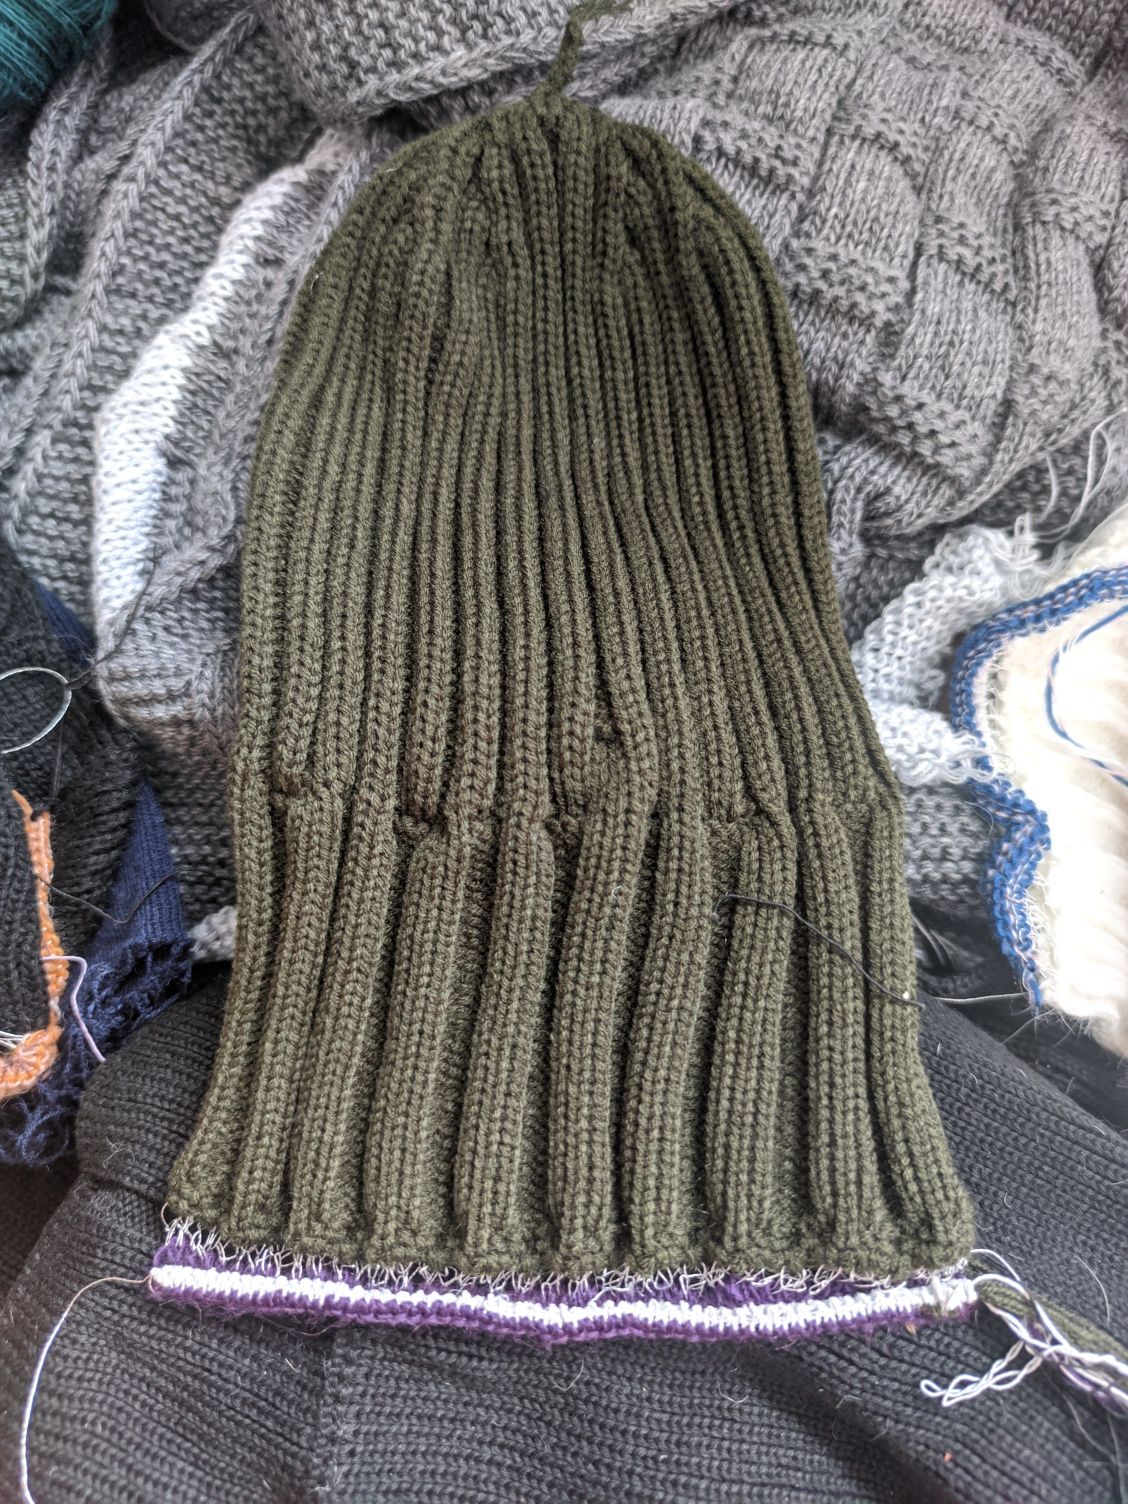 Пряжа акрил в изделиях вязальной машины шапки шарфы